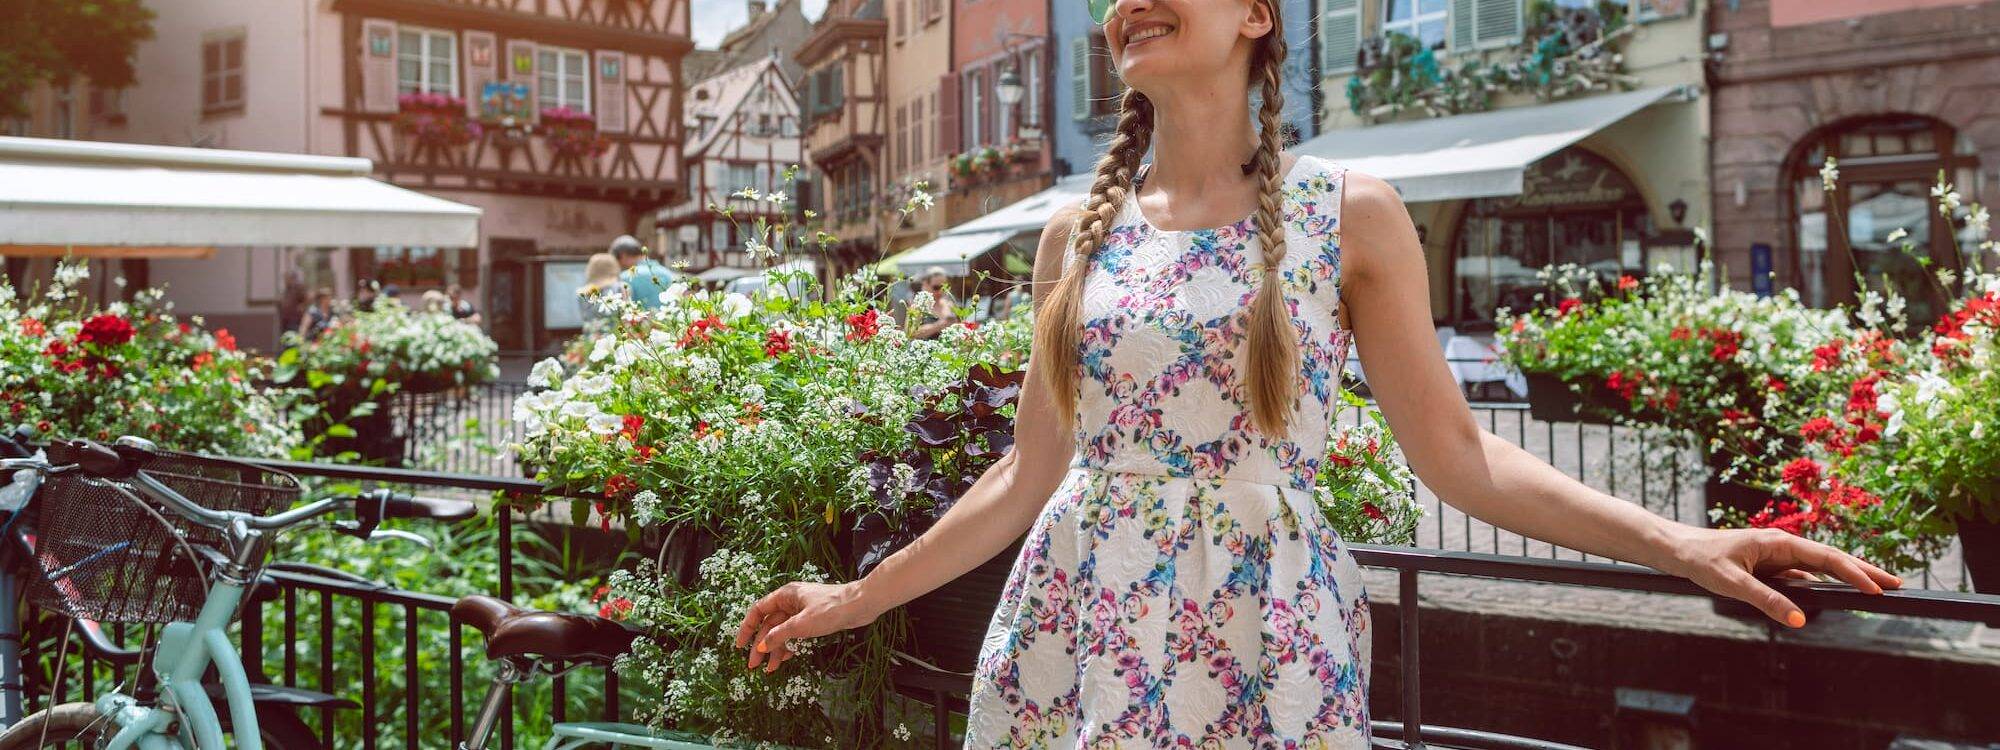 Quels sont les endroits à visiter en Alsace ? Benfeld